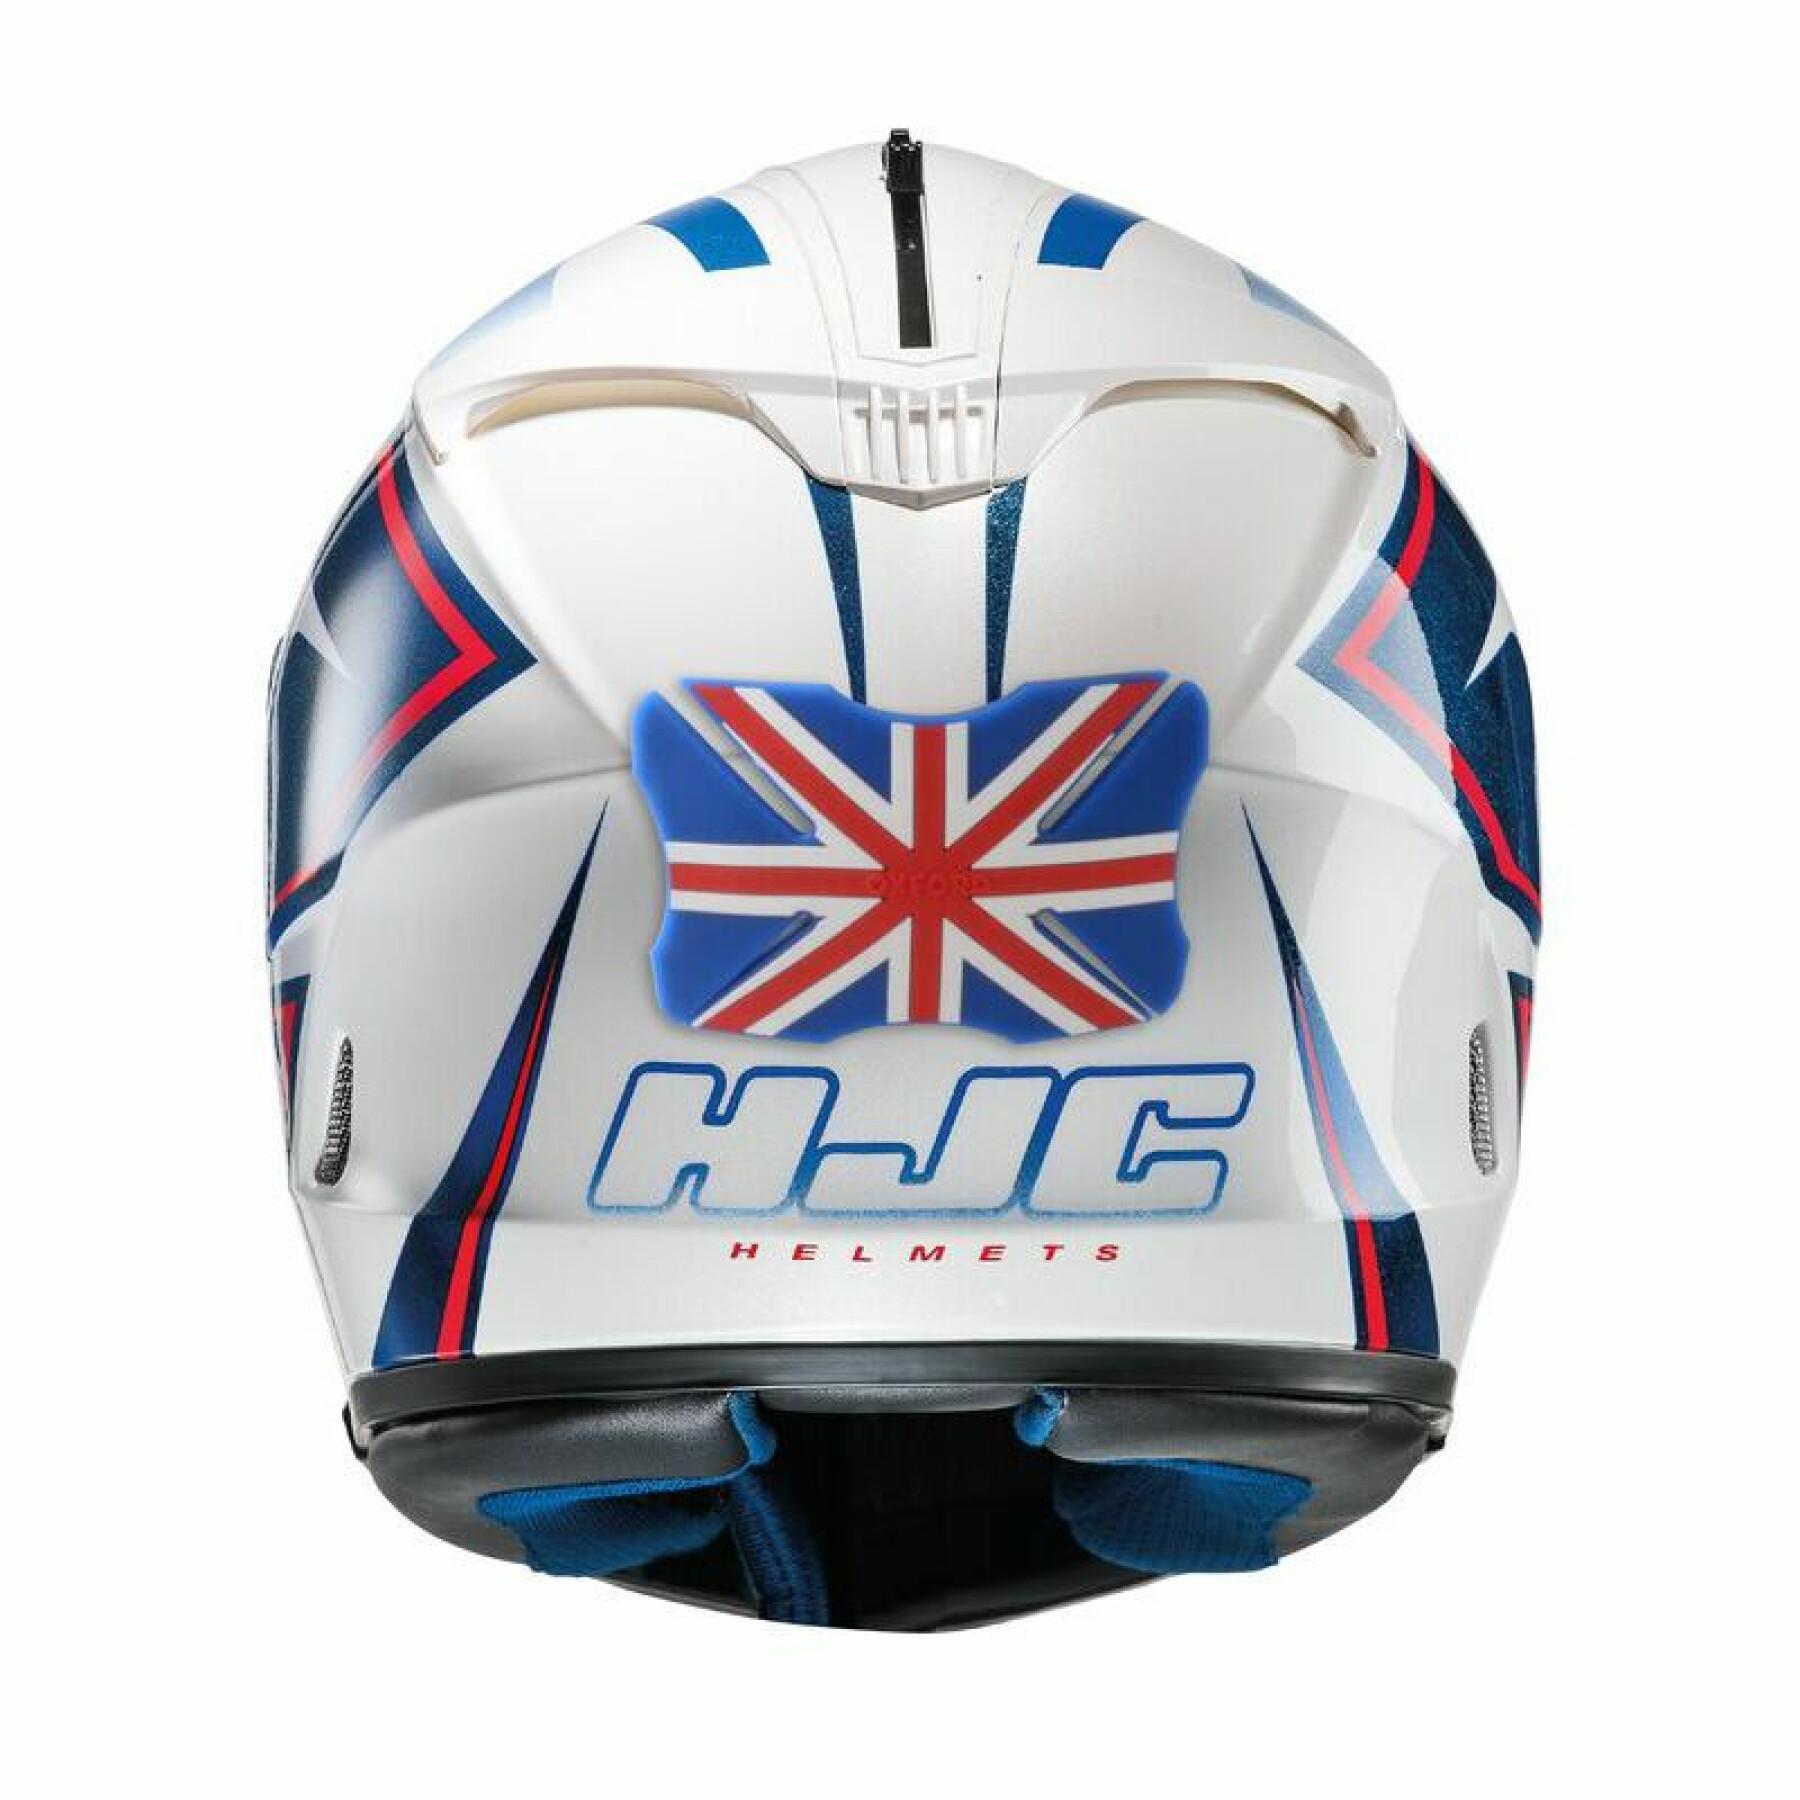 Parachoques para casco de moto Oxford Ride on